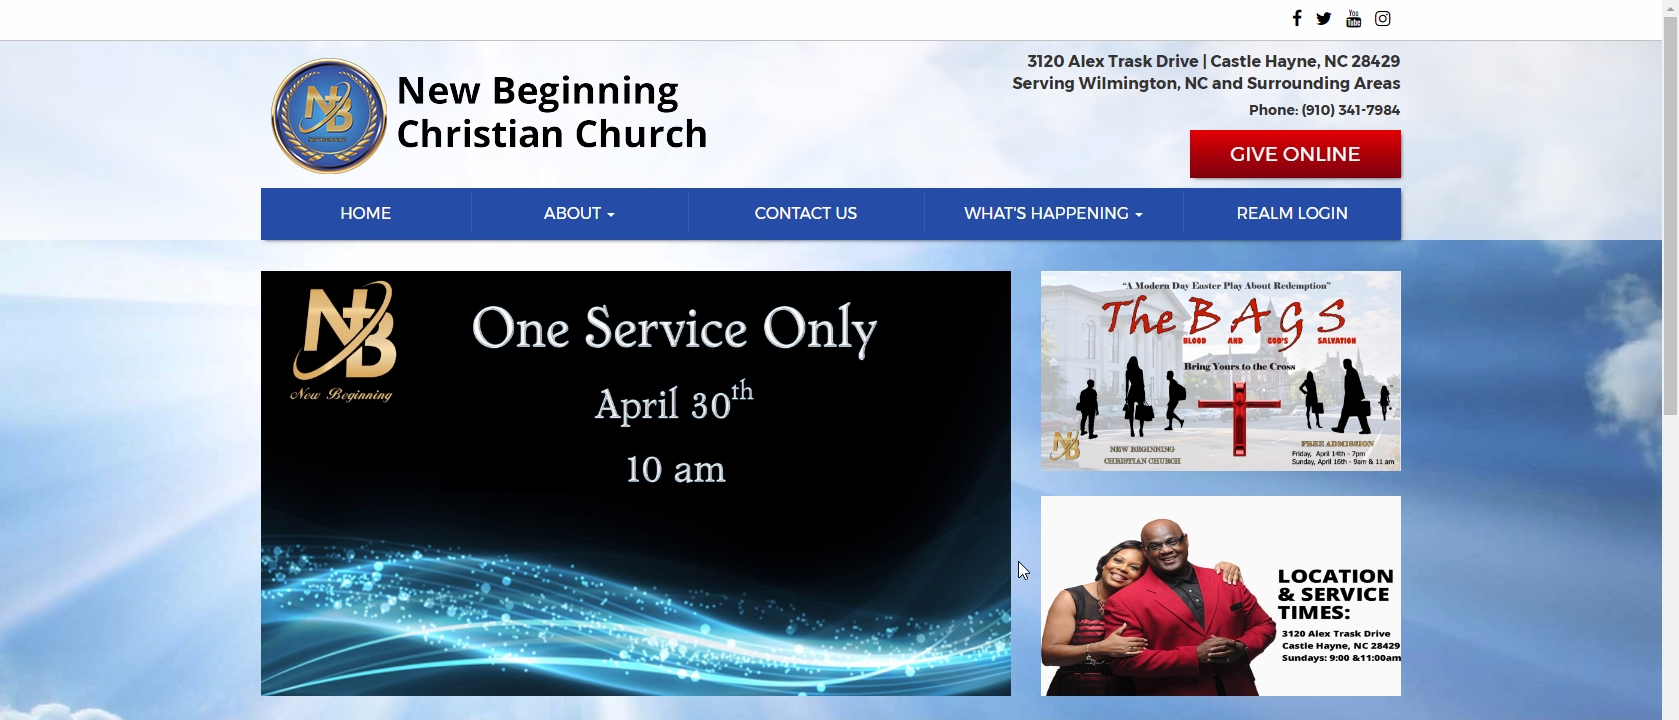 New Beginning Christian Church